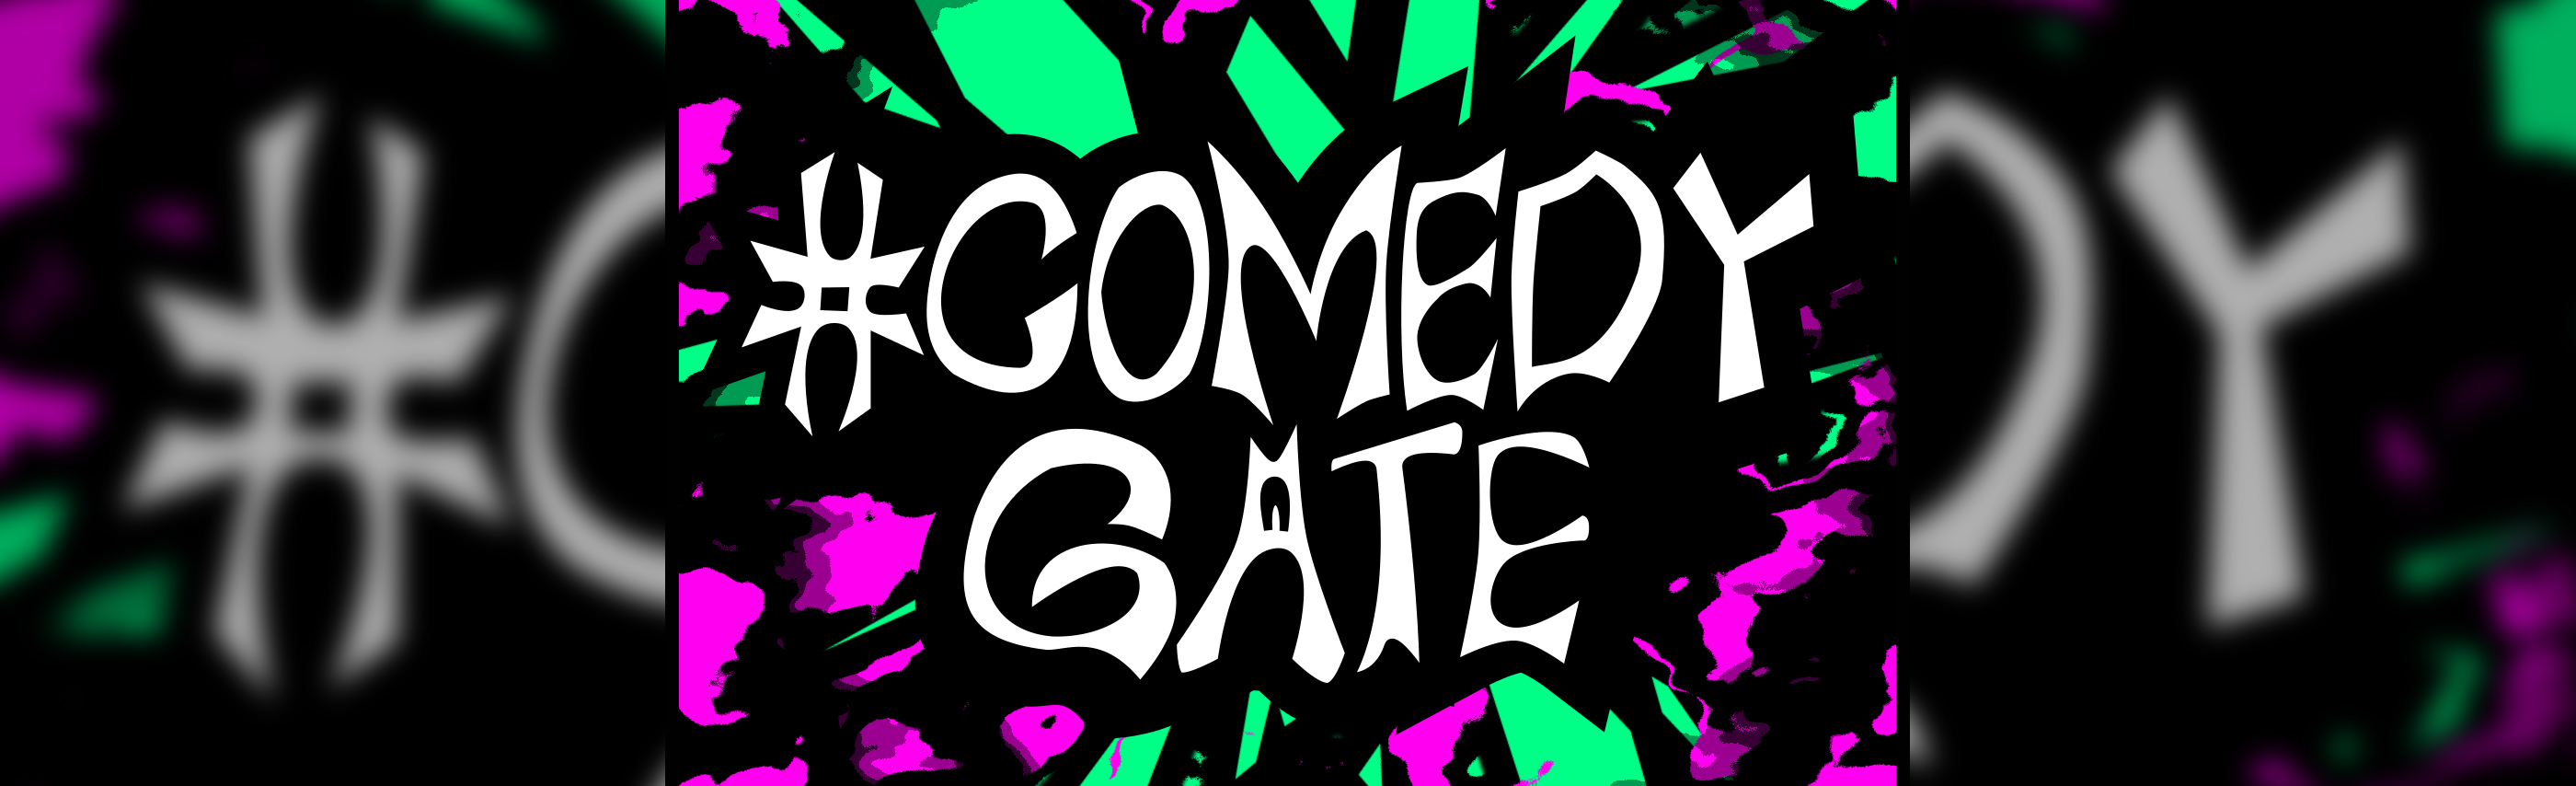 Comedy Gate